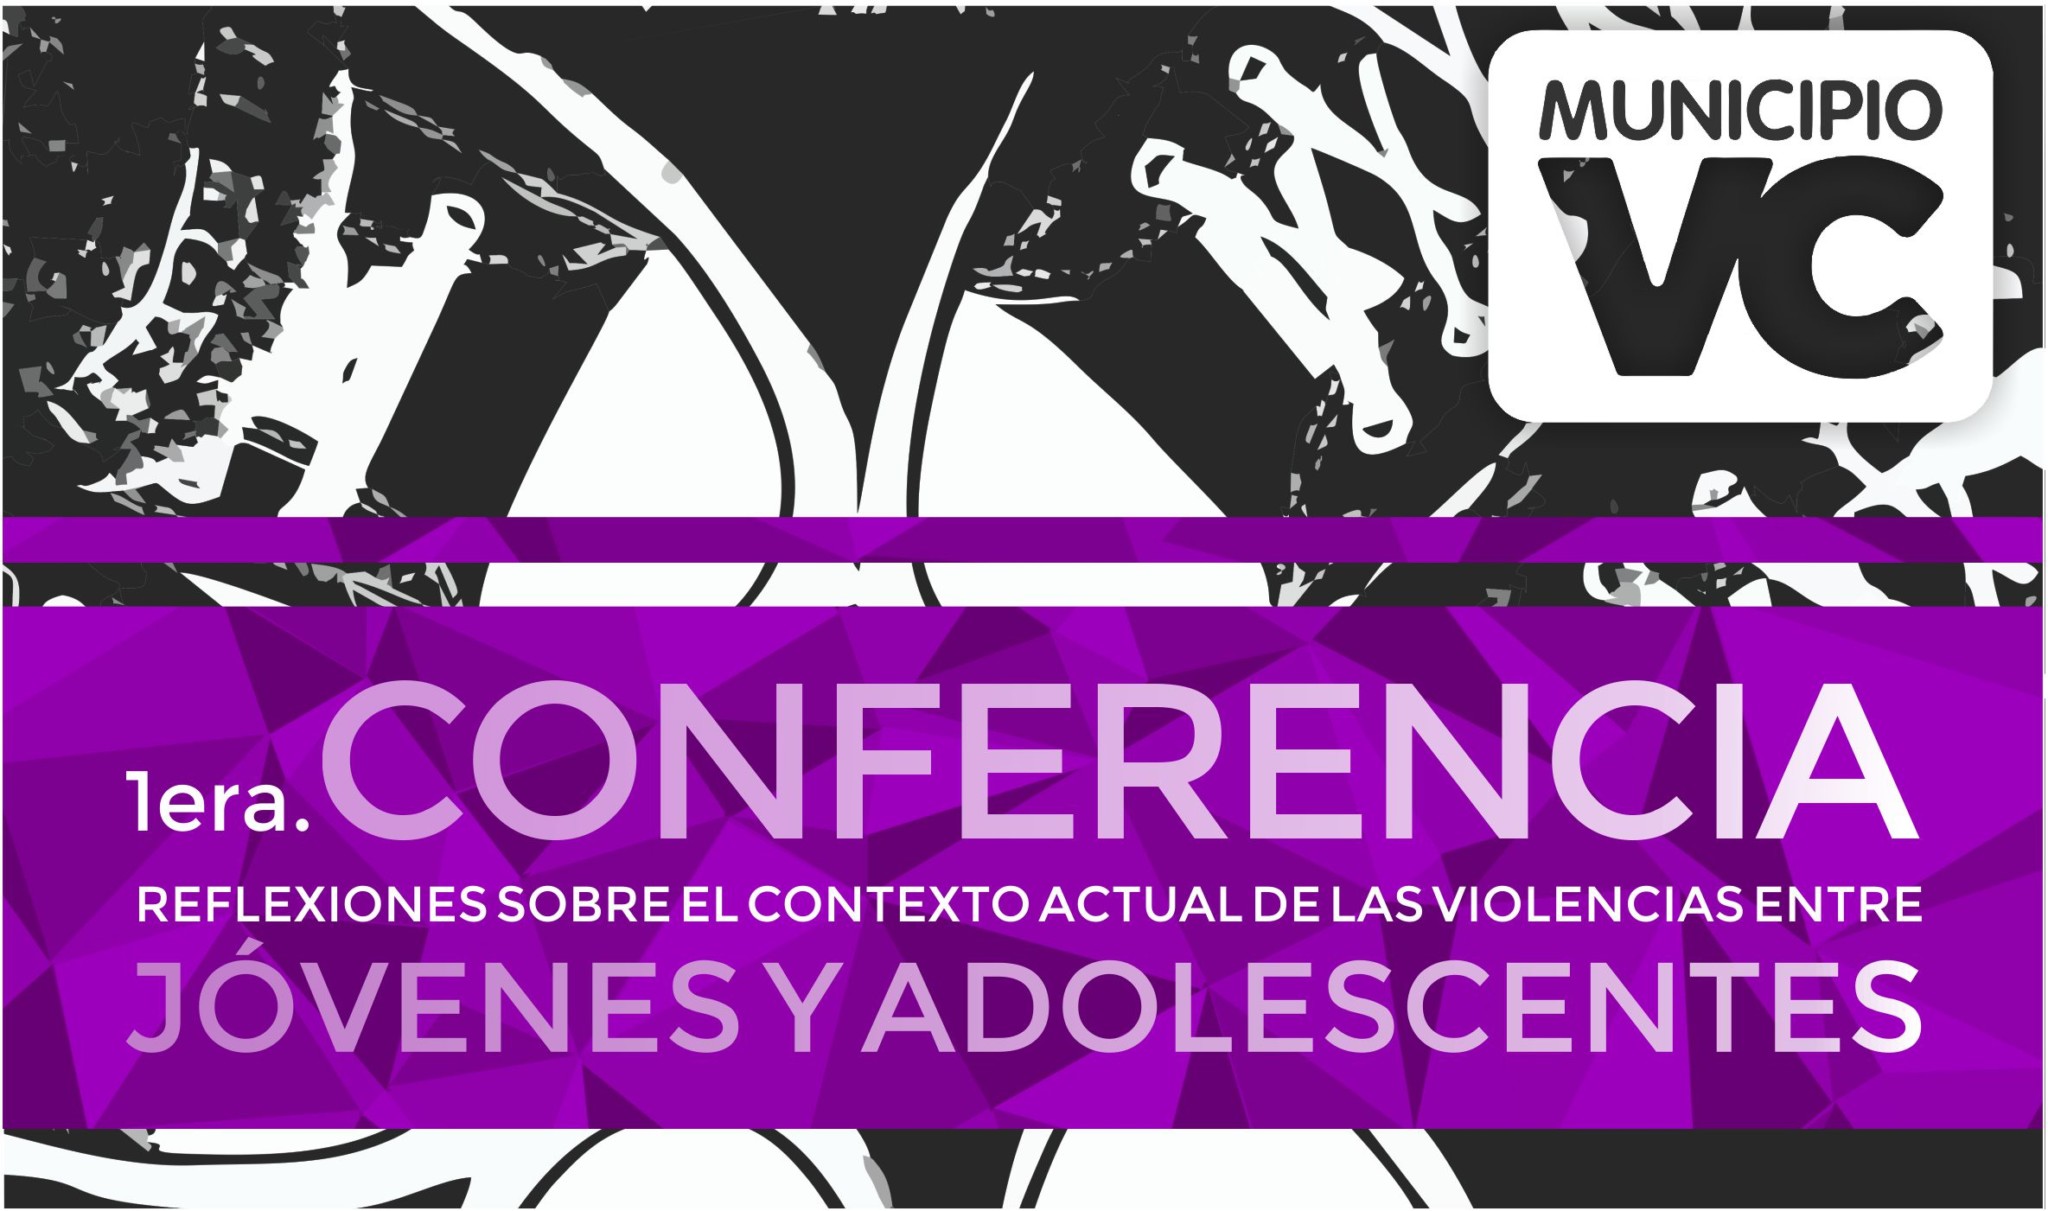 Conferencia sobre prevención de violencias entre jóvenes y adolescentes